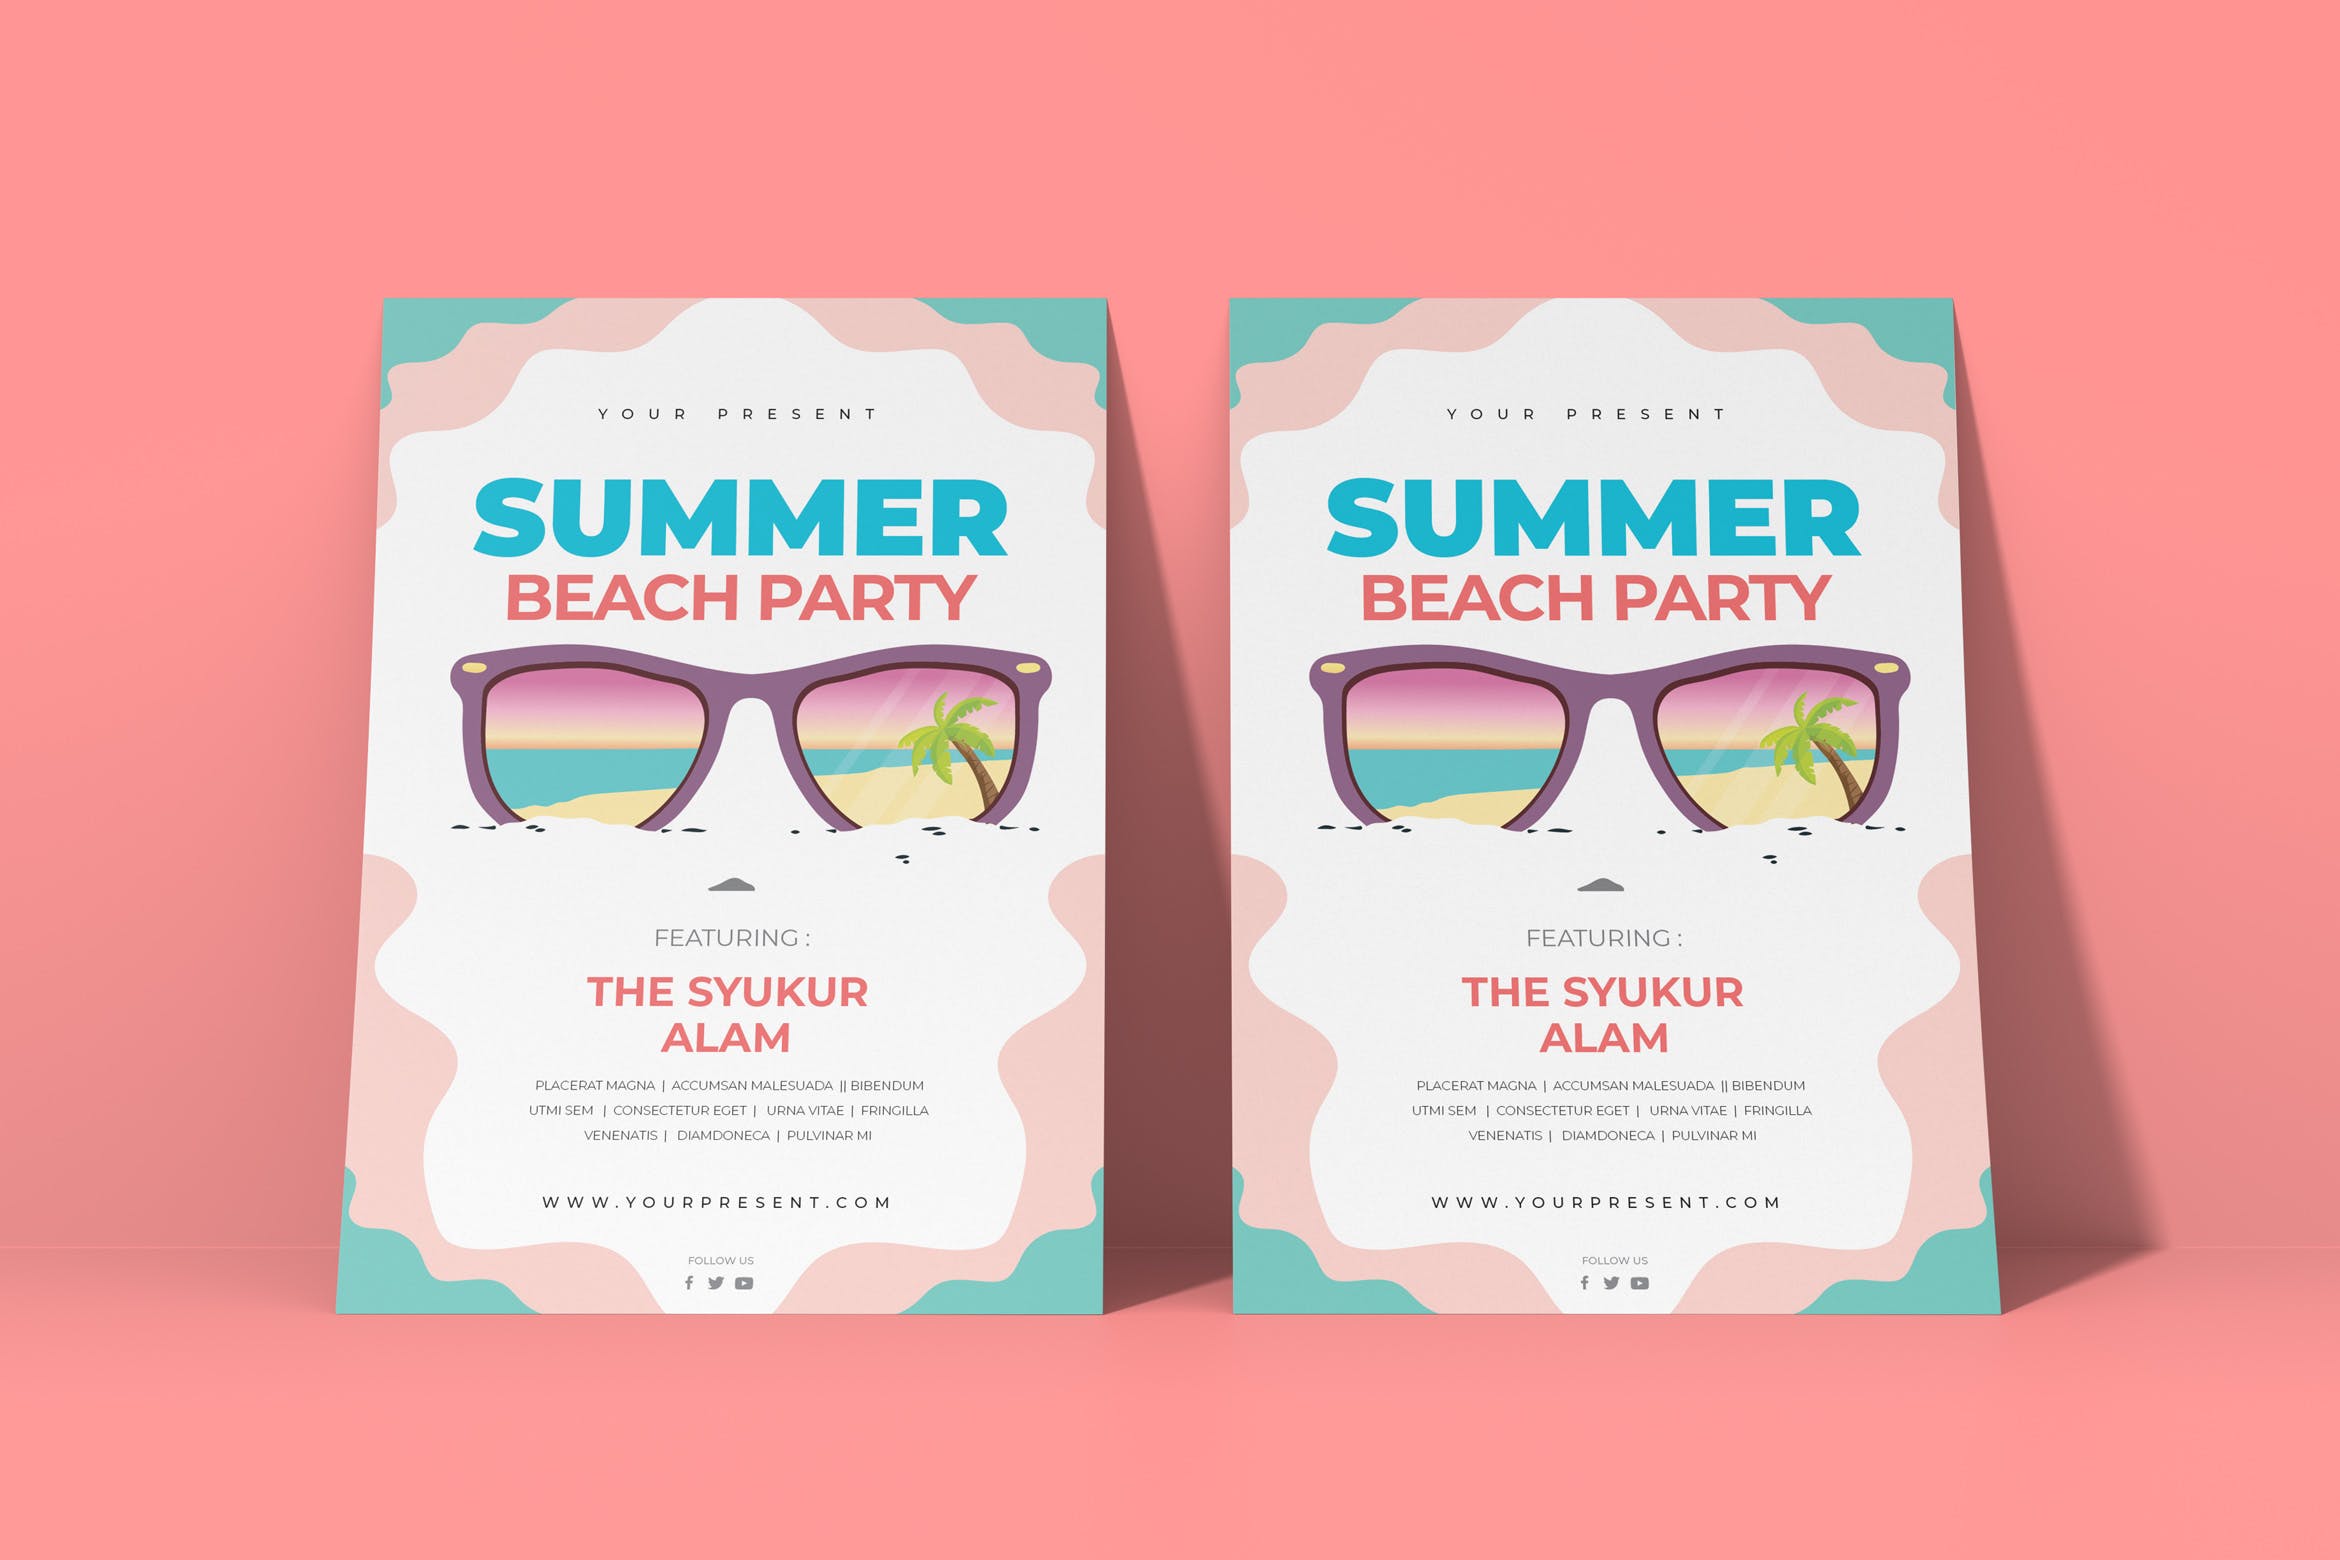 夏日沙滩派对活动邀请传单设计模板 Beach Party插图